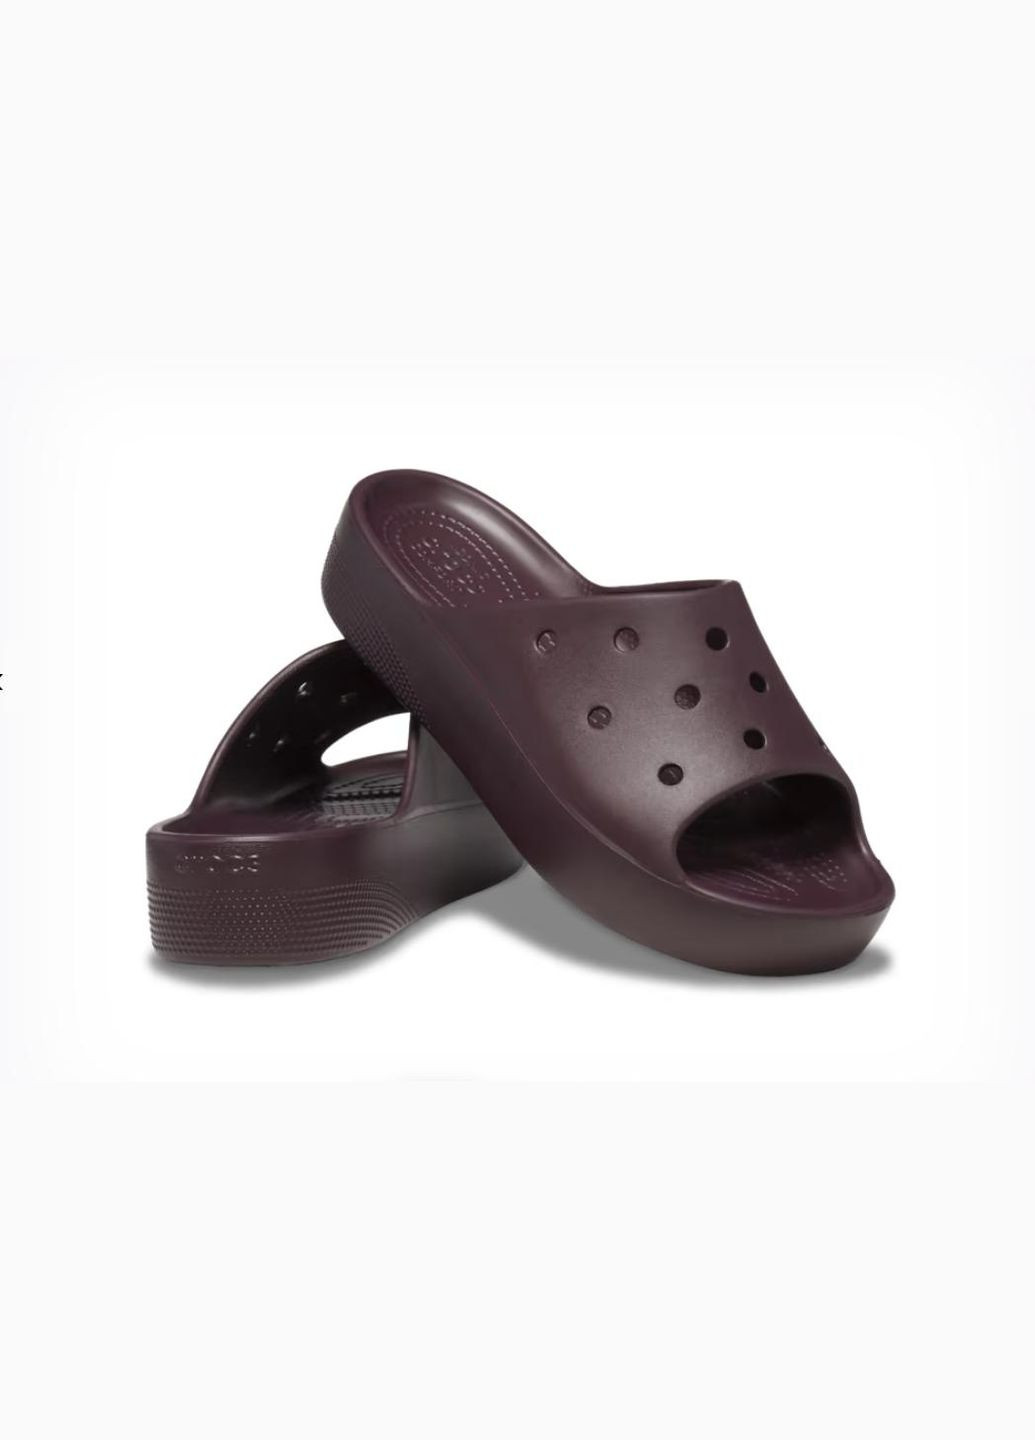 Вишневые женские кроксы classic platform slide m5w7--24 см dark cherry 208180 Crocs